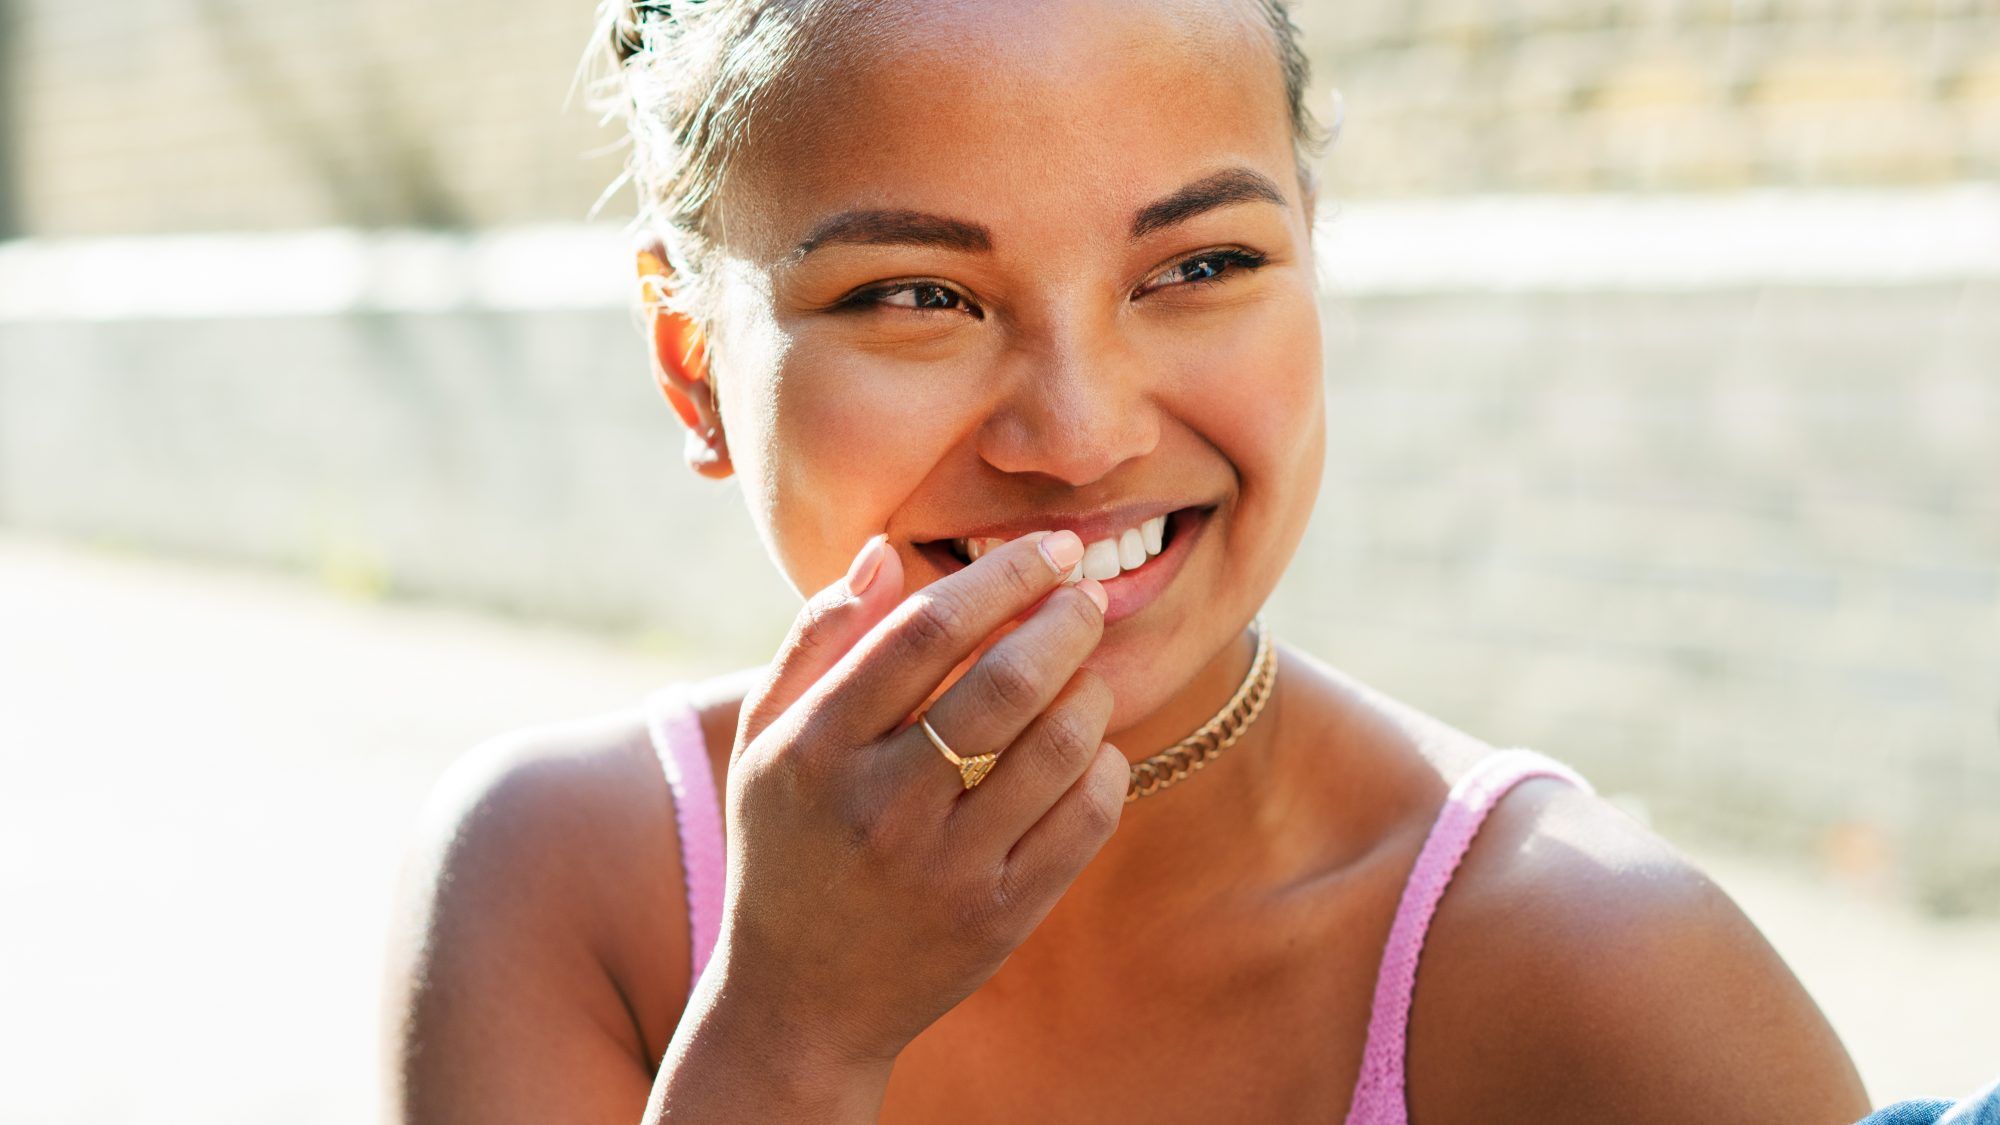 chyby pri bielení zubov: žena s bielymi zubami sa usmieva